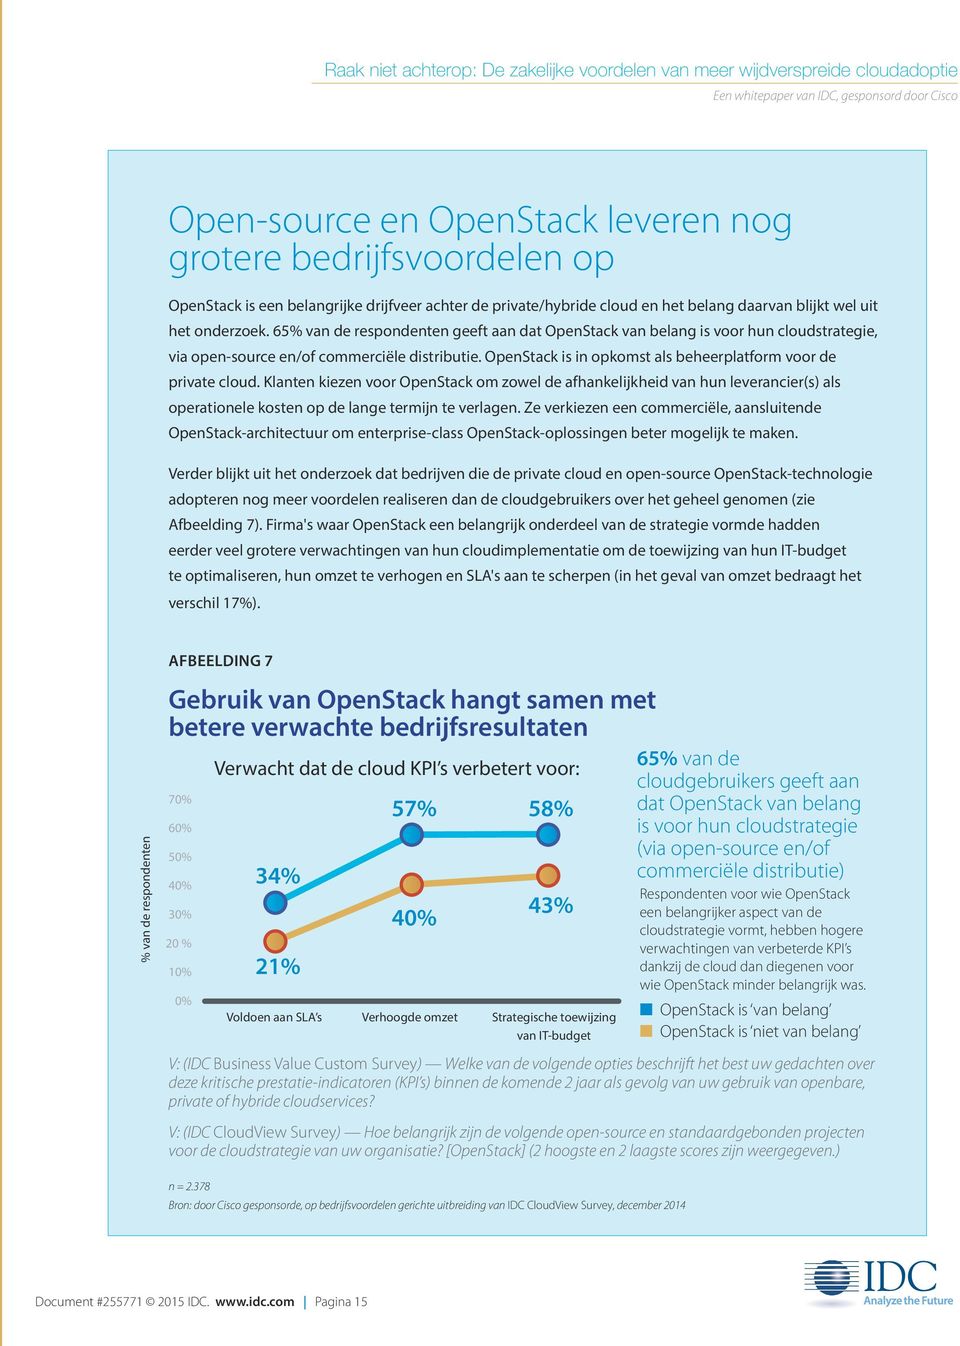 Klanten kiezen voor OpenStack om zowel de afhankelijkheid van hun leverancier(s) als operationele kosten op de lange termijn te verlagen.